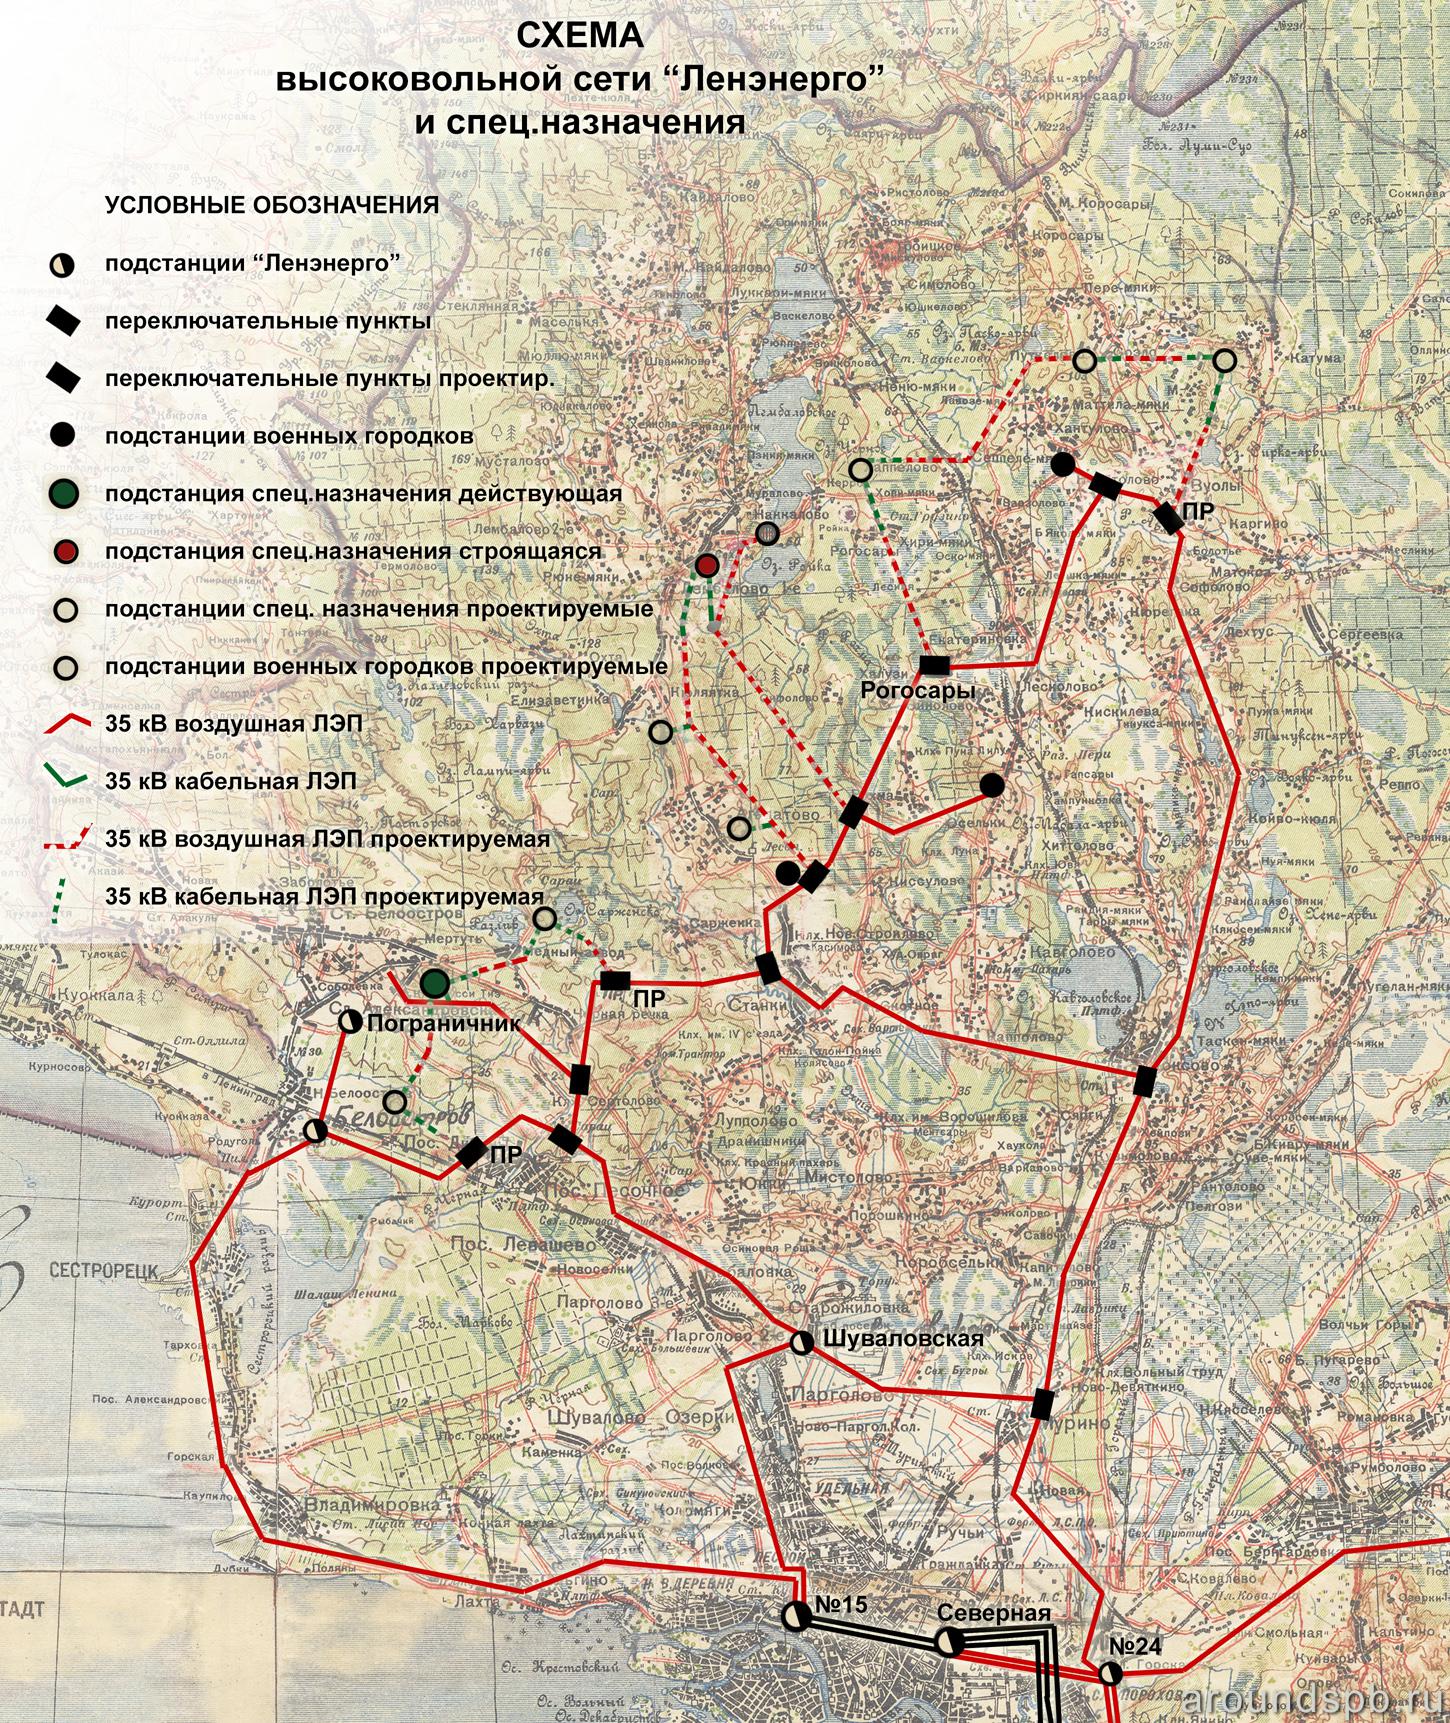 Схема высоковольтной сети Ленэнерго и специального назначения. 1938 год.